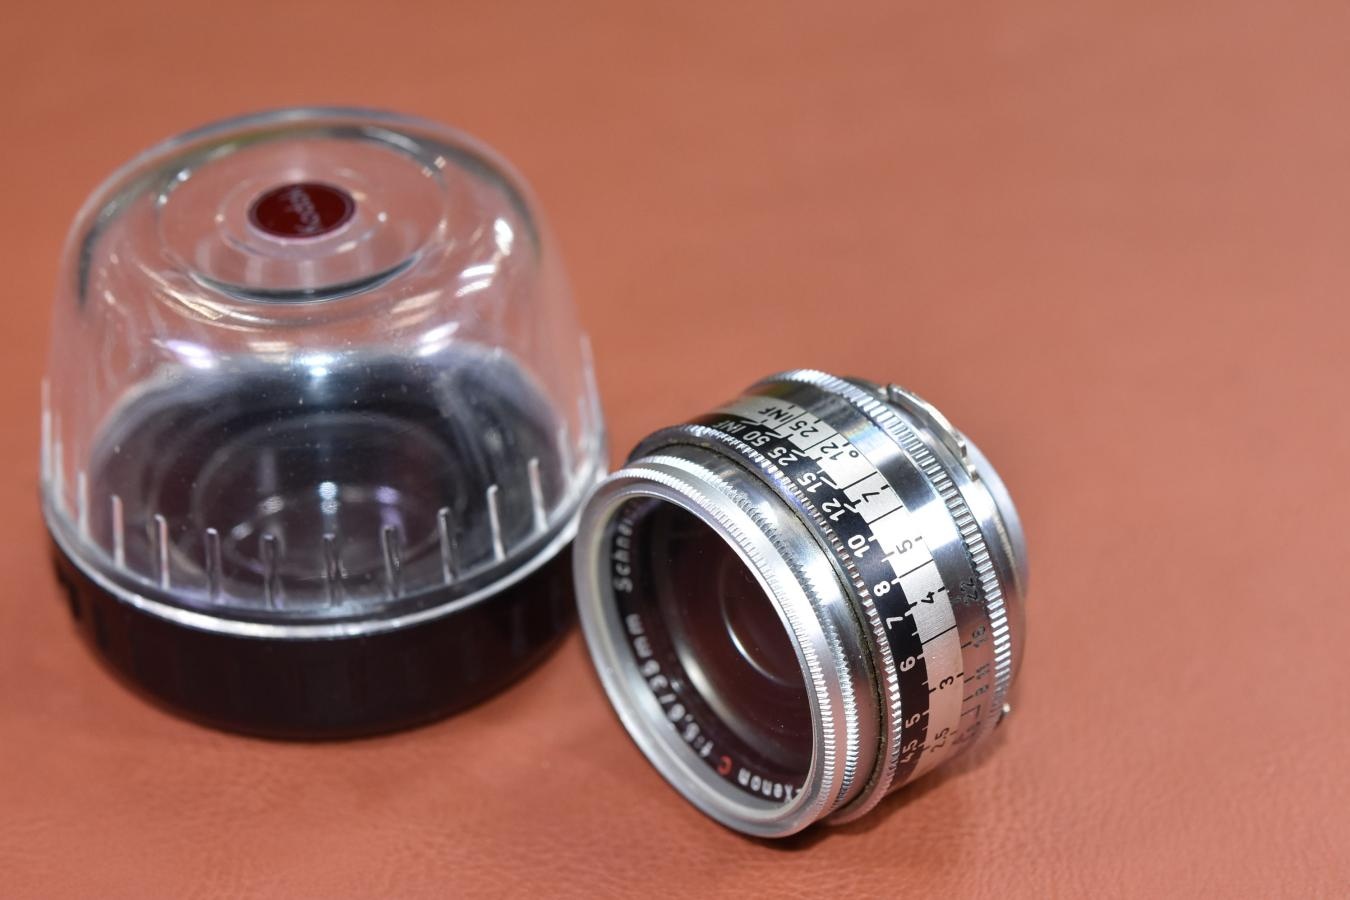 【希 少】Schneider-Kreuznach Retina-Curtar-Xenon C 35mm F5.6 純正プラスチックケース、フィルター付 【Kodak Retina C用】